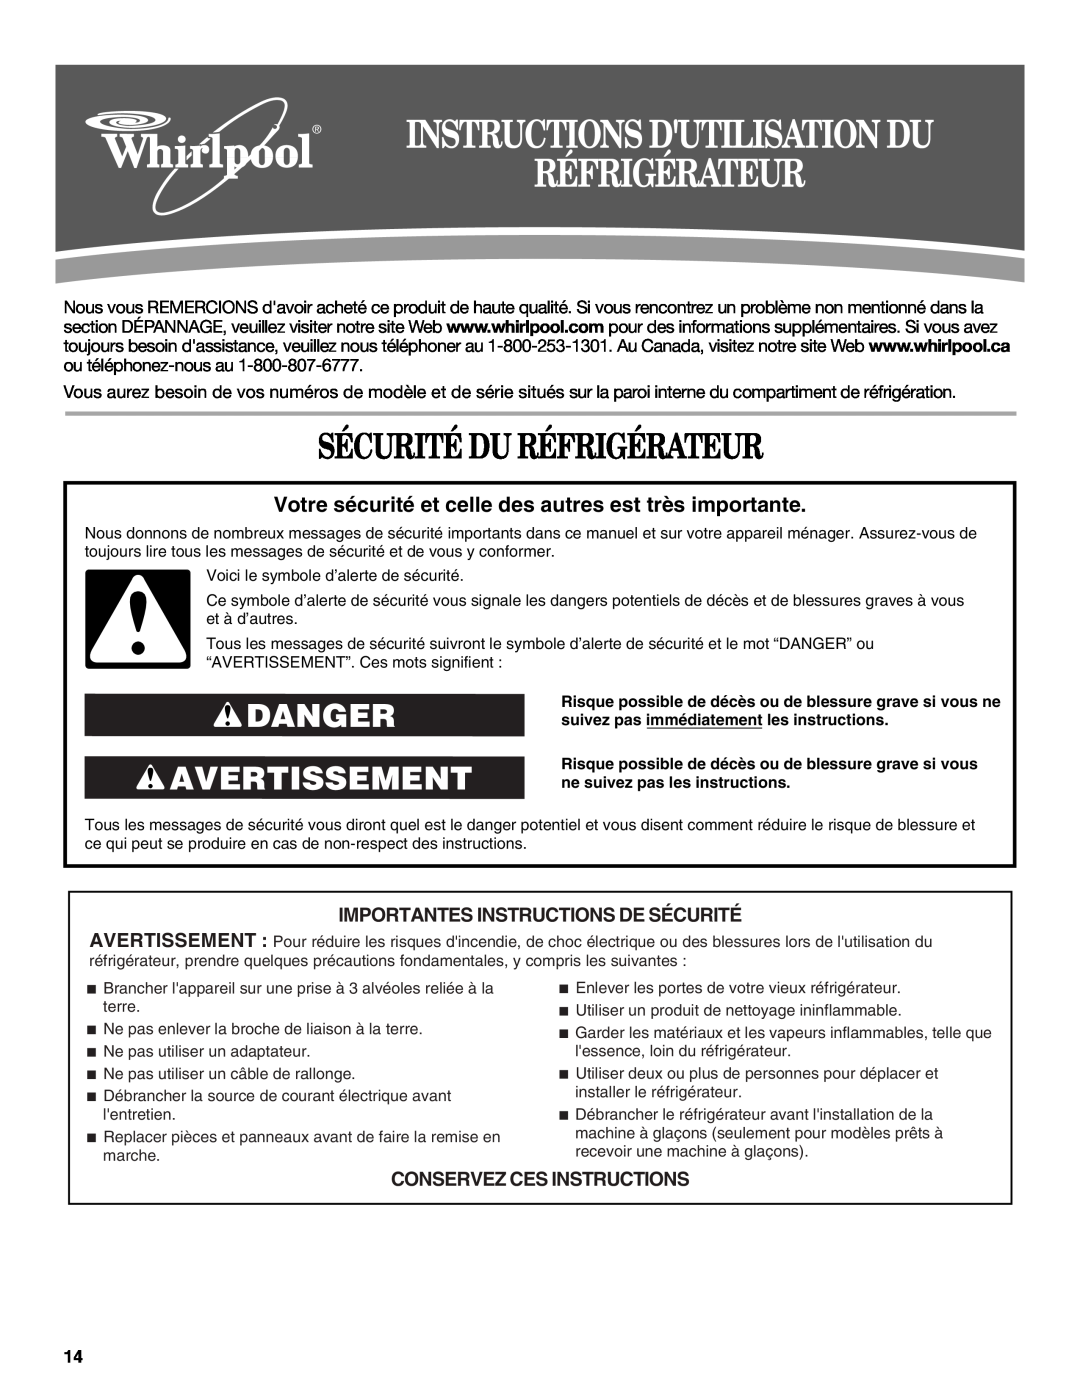 Whirlpool W10214130A Sécurité Du Réfrigérateur, Danger Avertissement, Importantes Instructions De Sécurité 